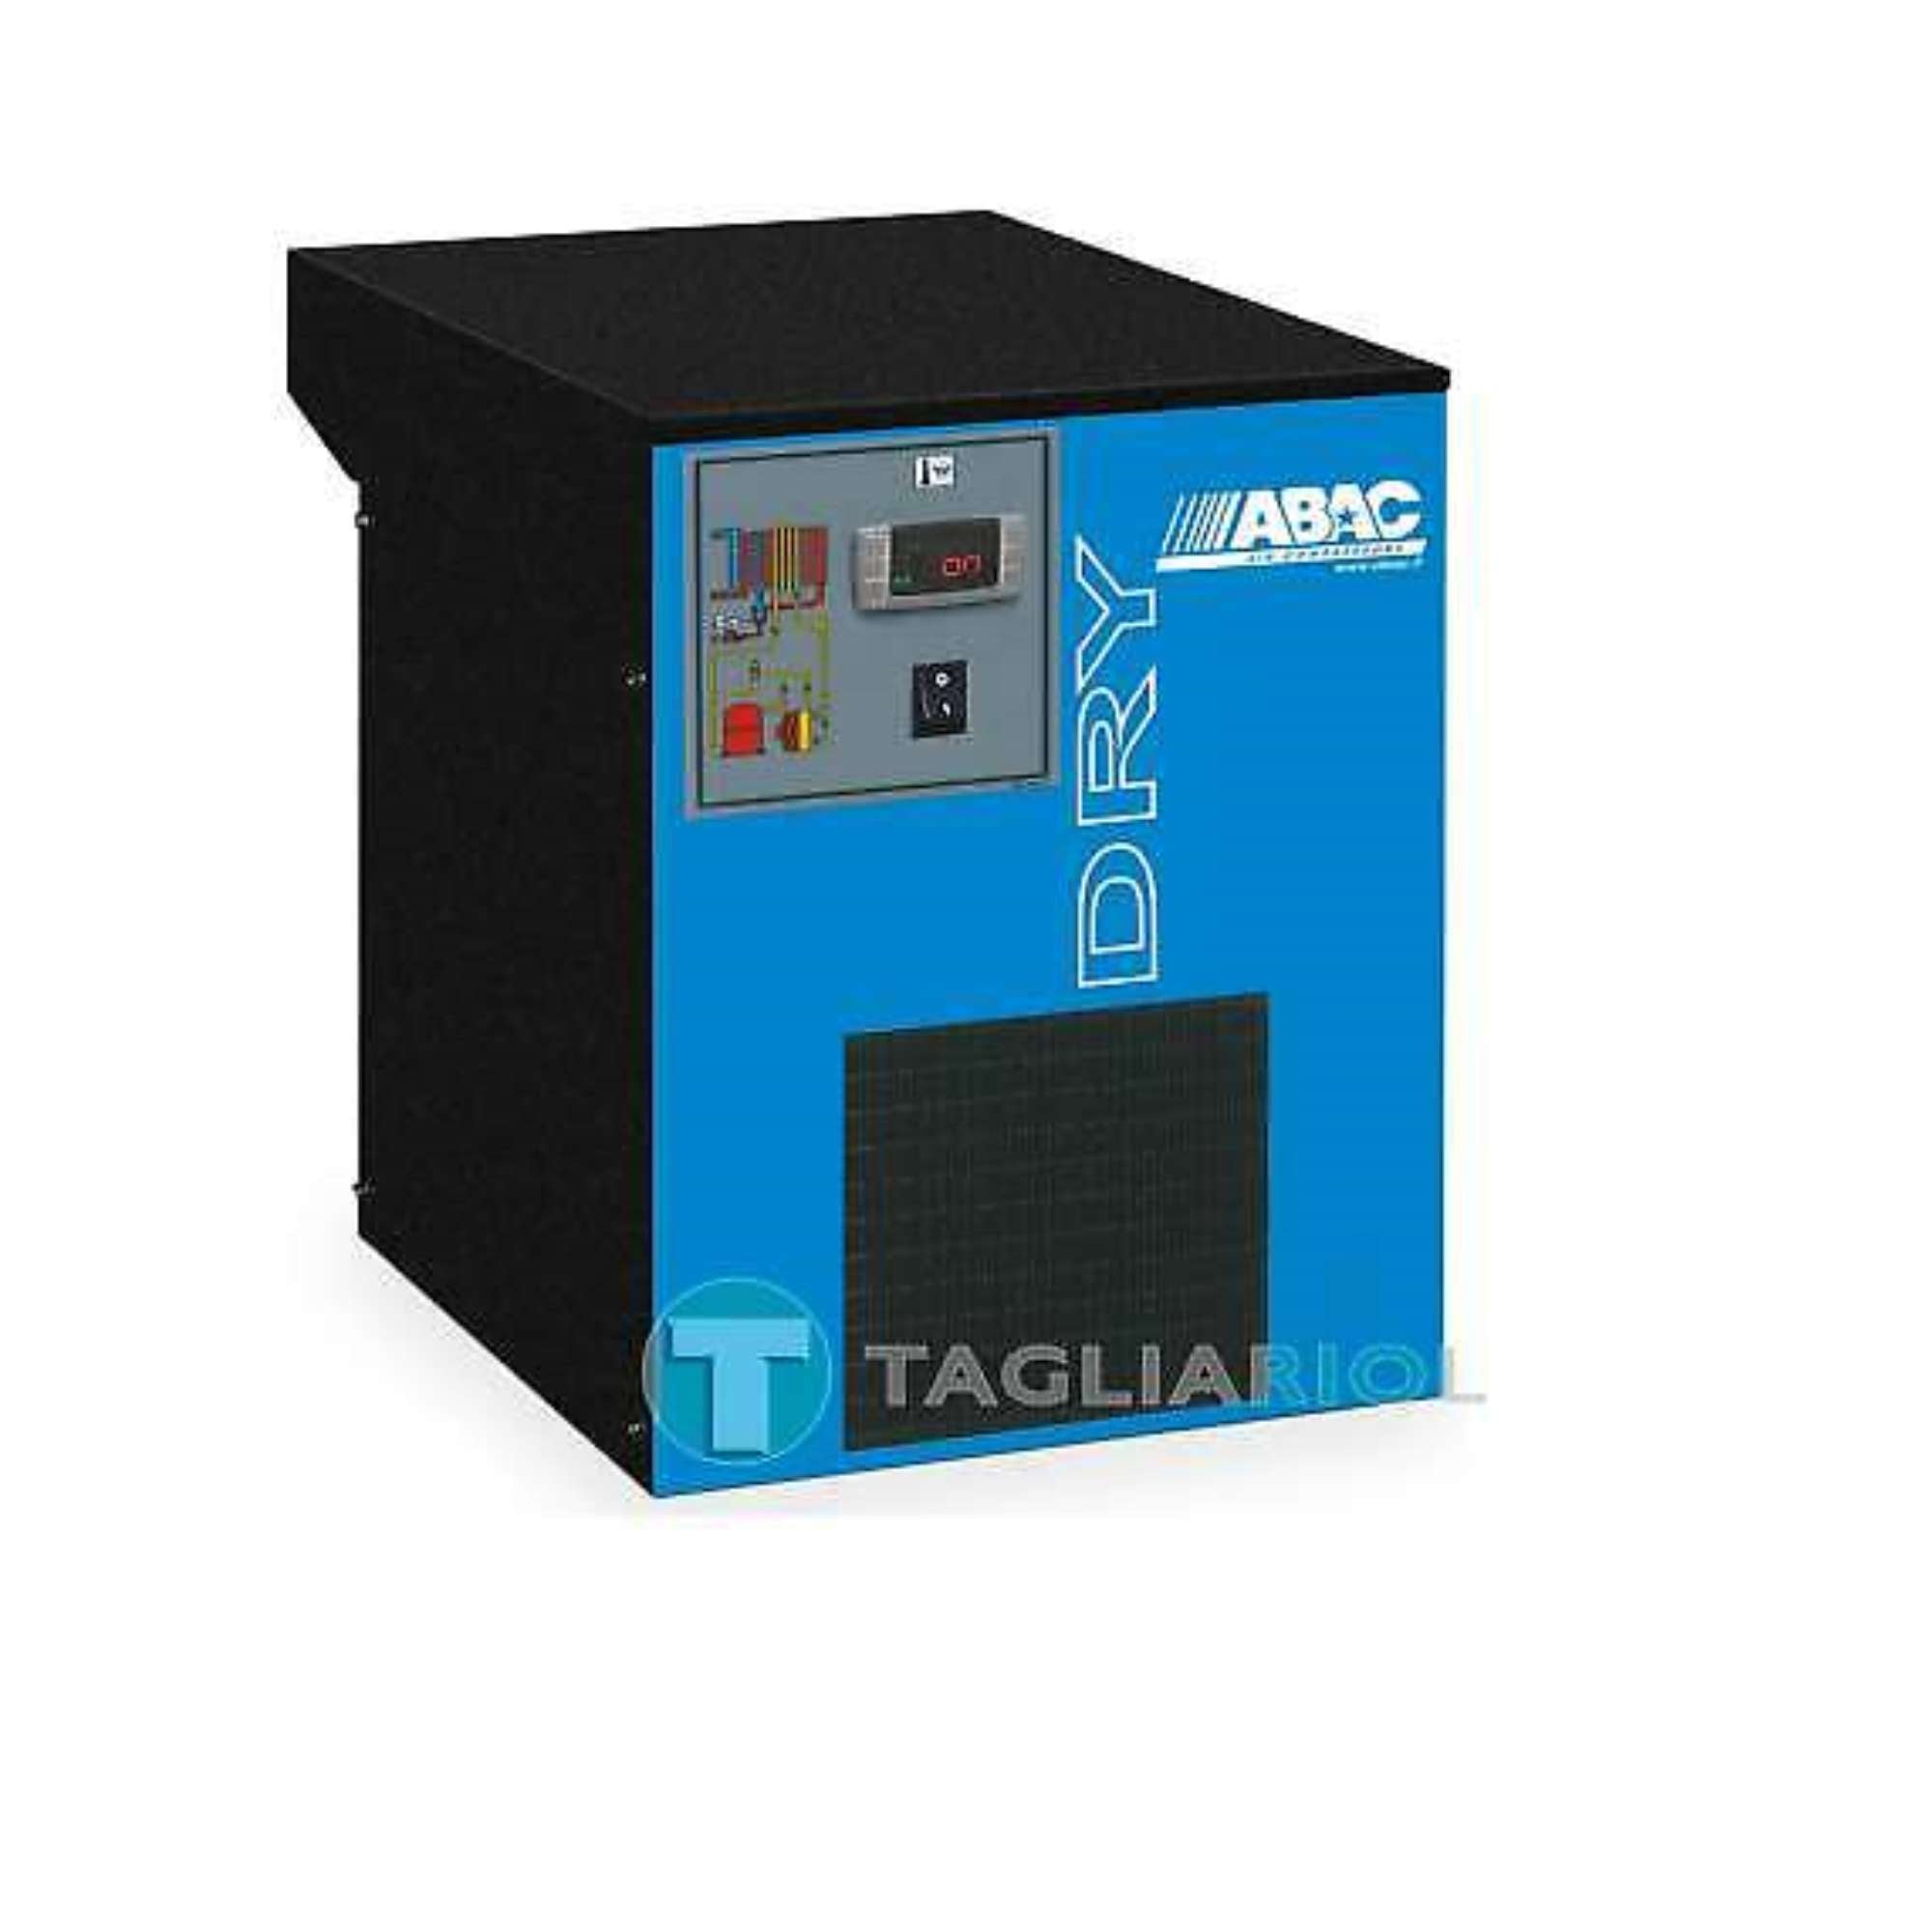 Abac dry 20 essiccatore a refrigerazione per impianti di aria compressa - 20m3/h 16bar 230v 50hz